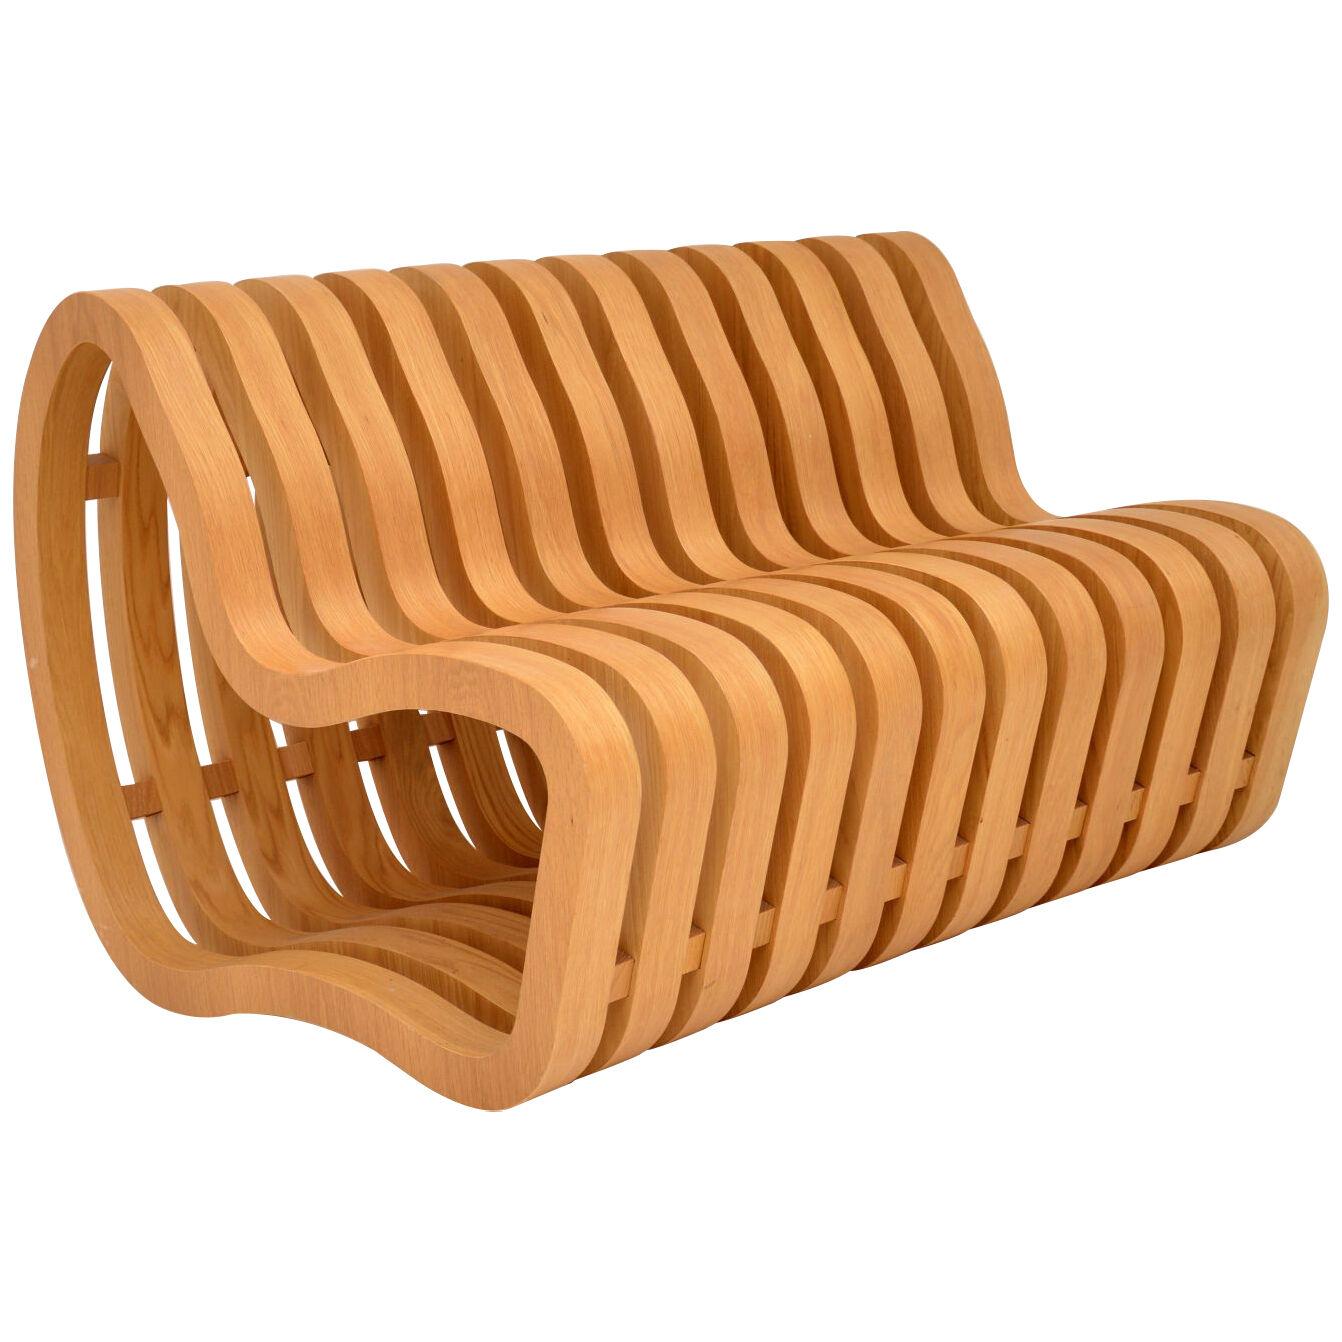 Modernist "Curve Bench" by Nina Moeller Designs